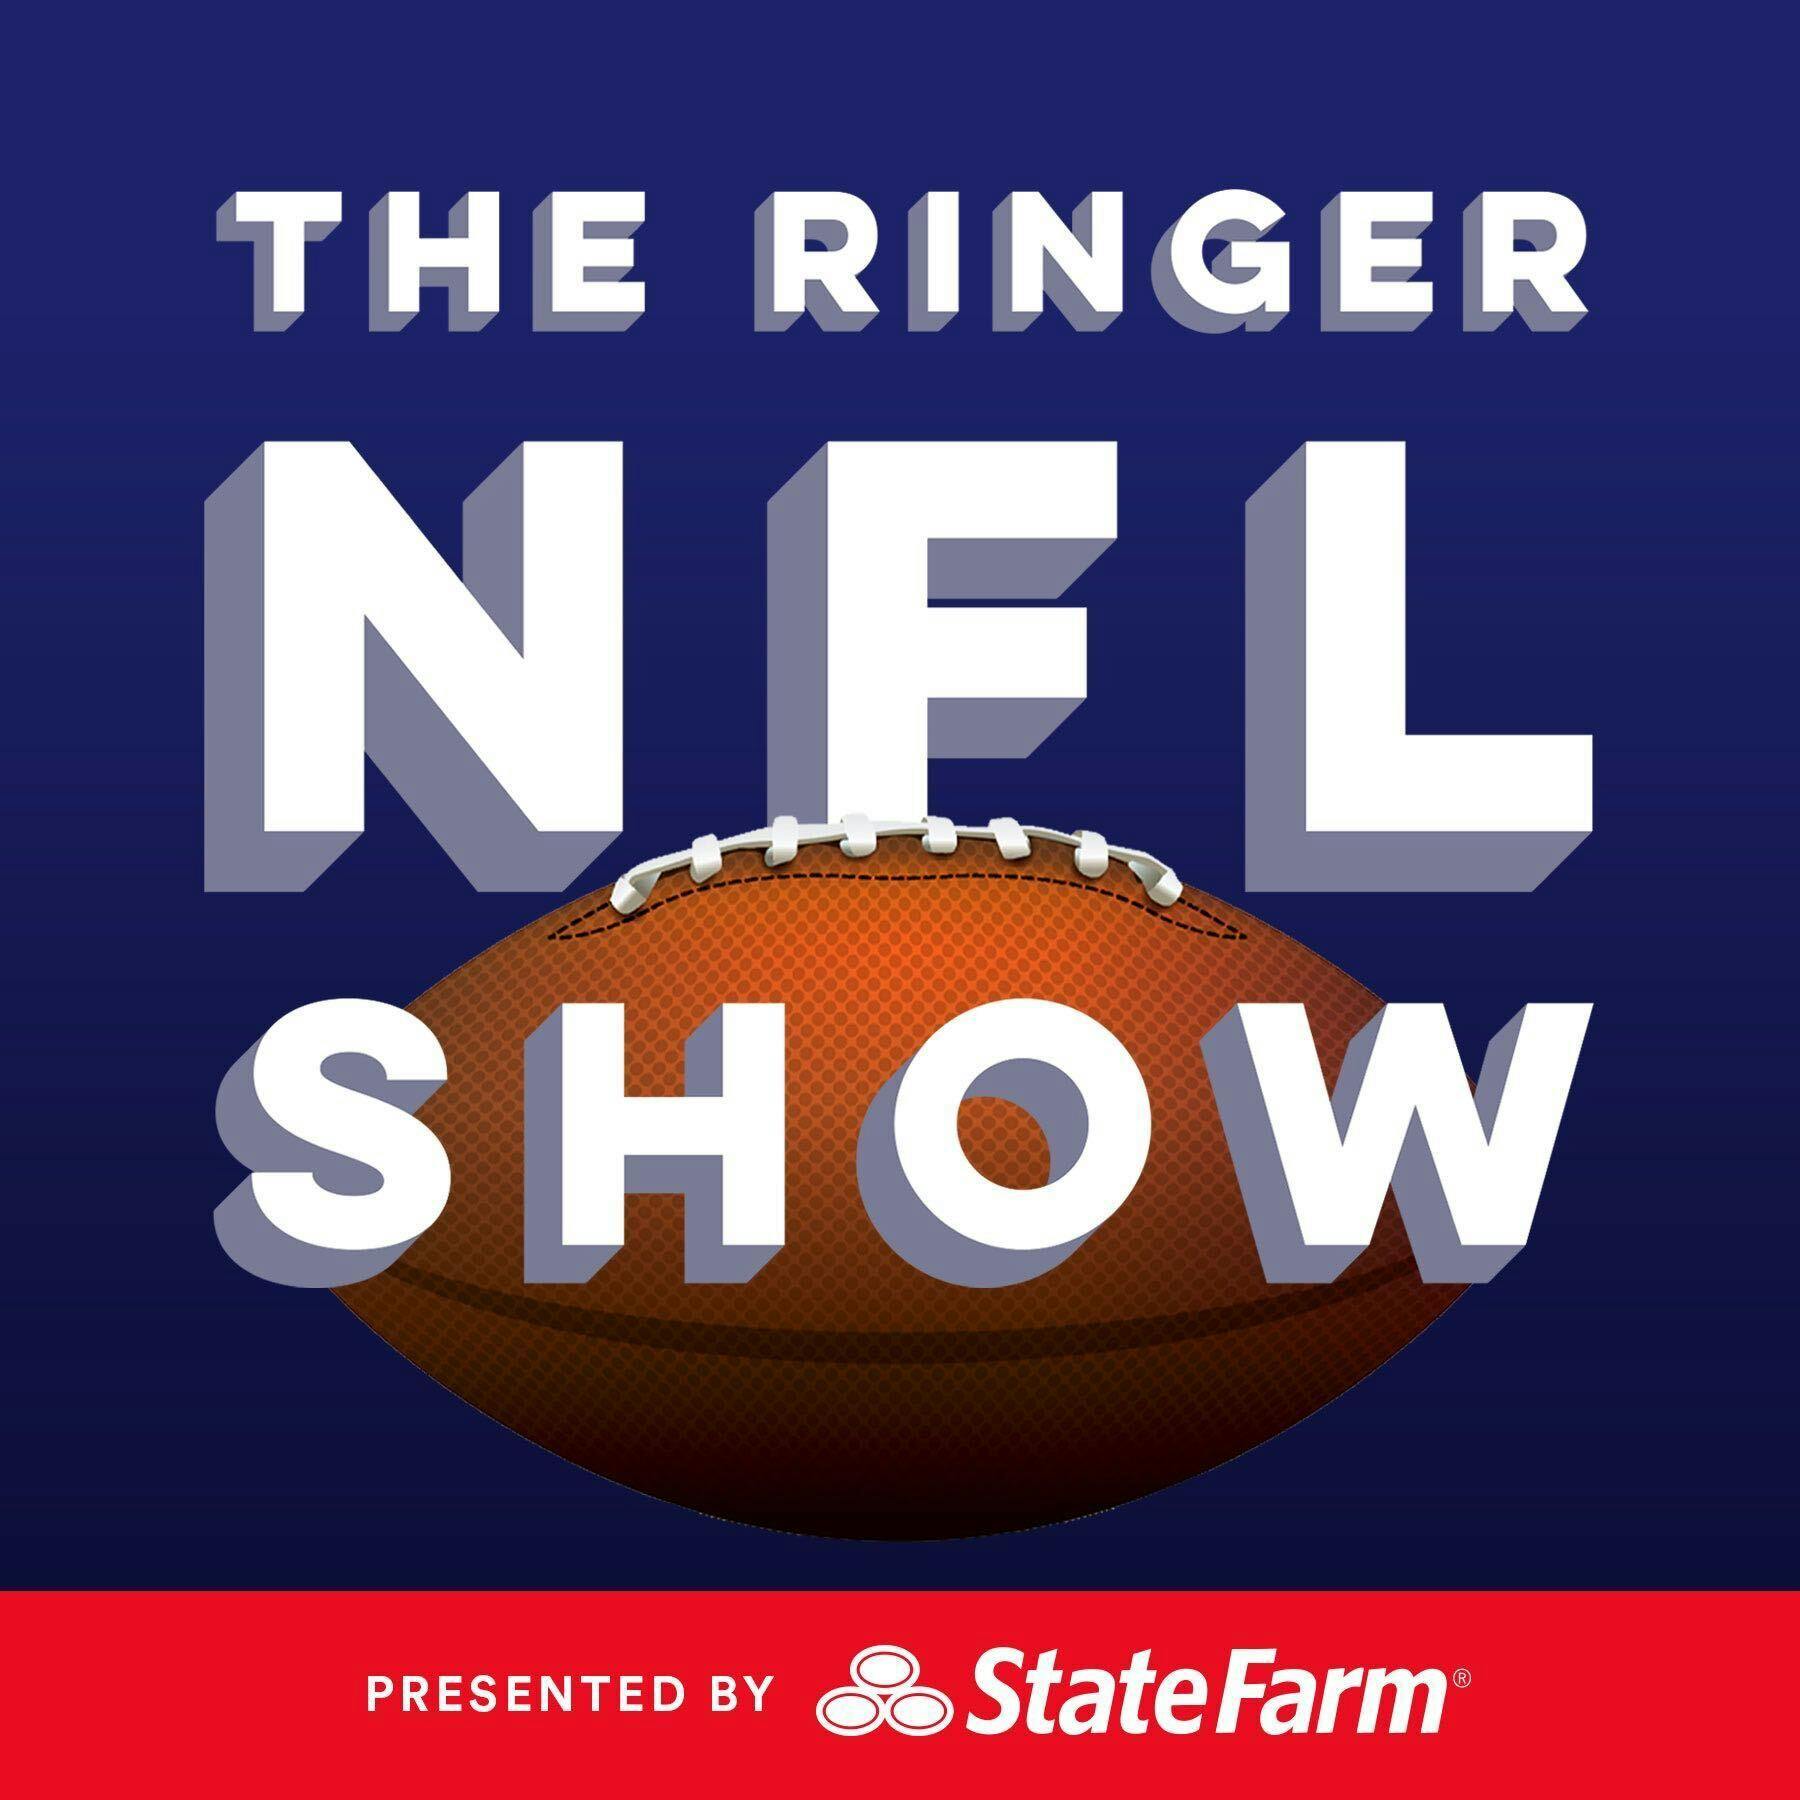 The Ringer NFL Show podcast